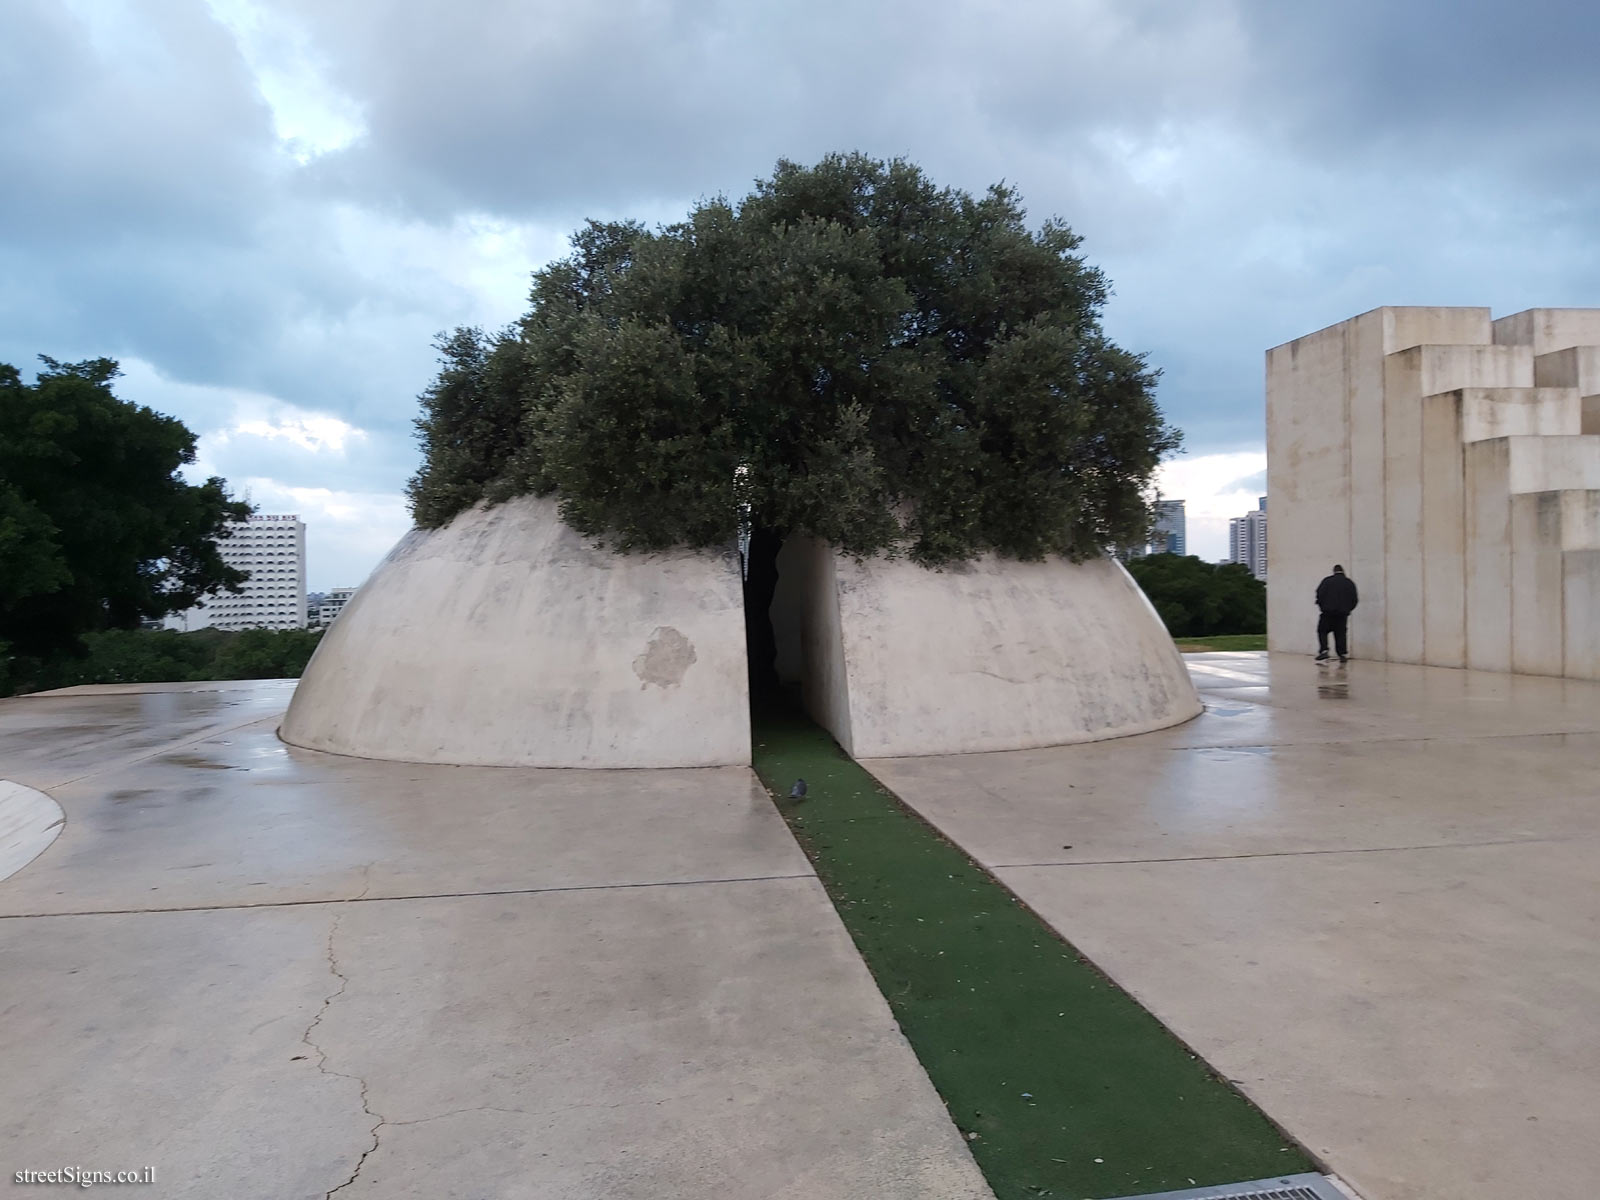 Tel Aviv - "Kikar Levana" - Outdoor sculpture by Dani Karavan - HaShalom Rd 110, Tel Aviv-Yafo, Israel